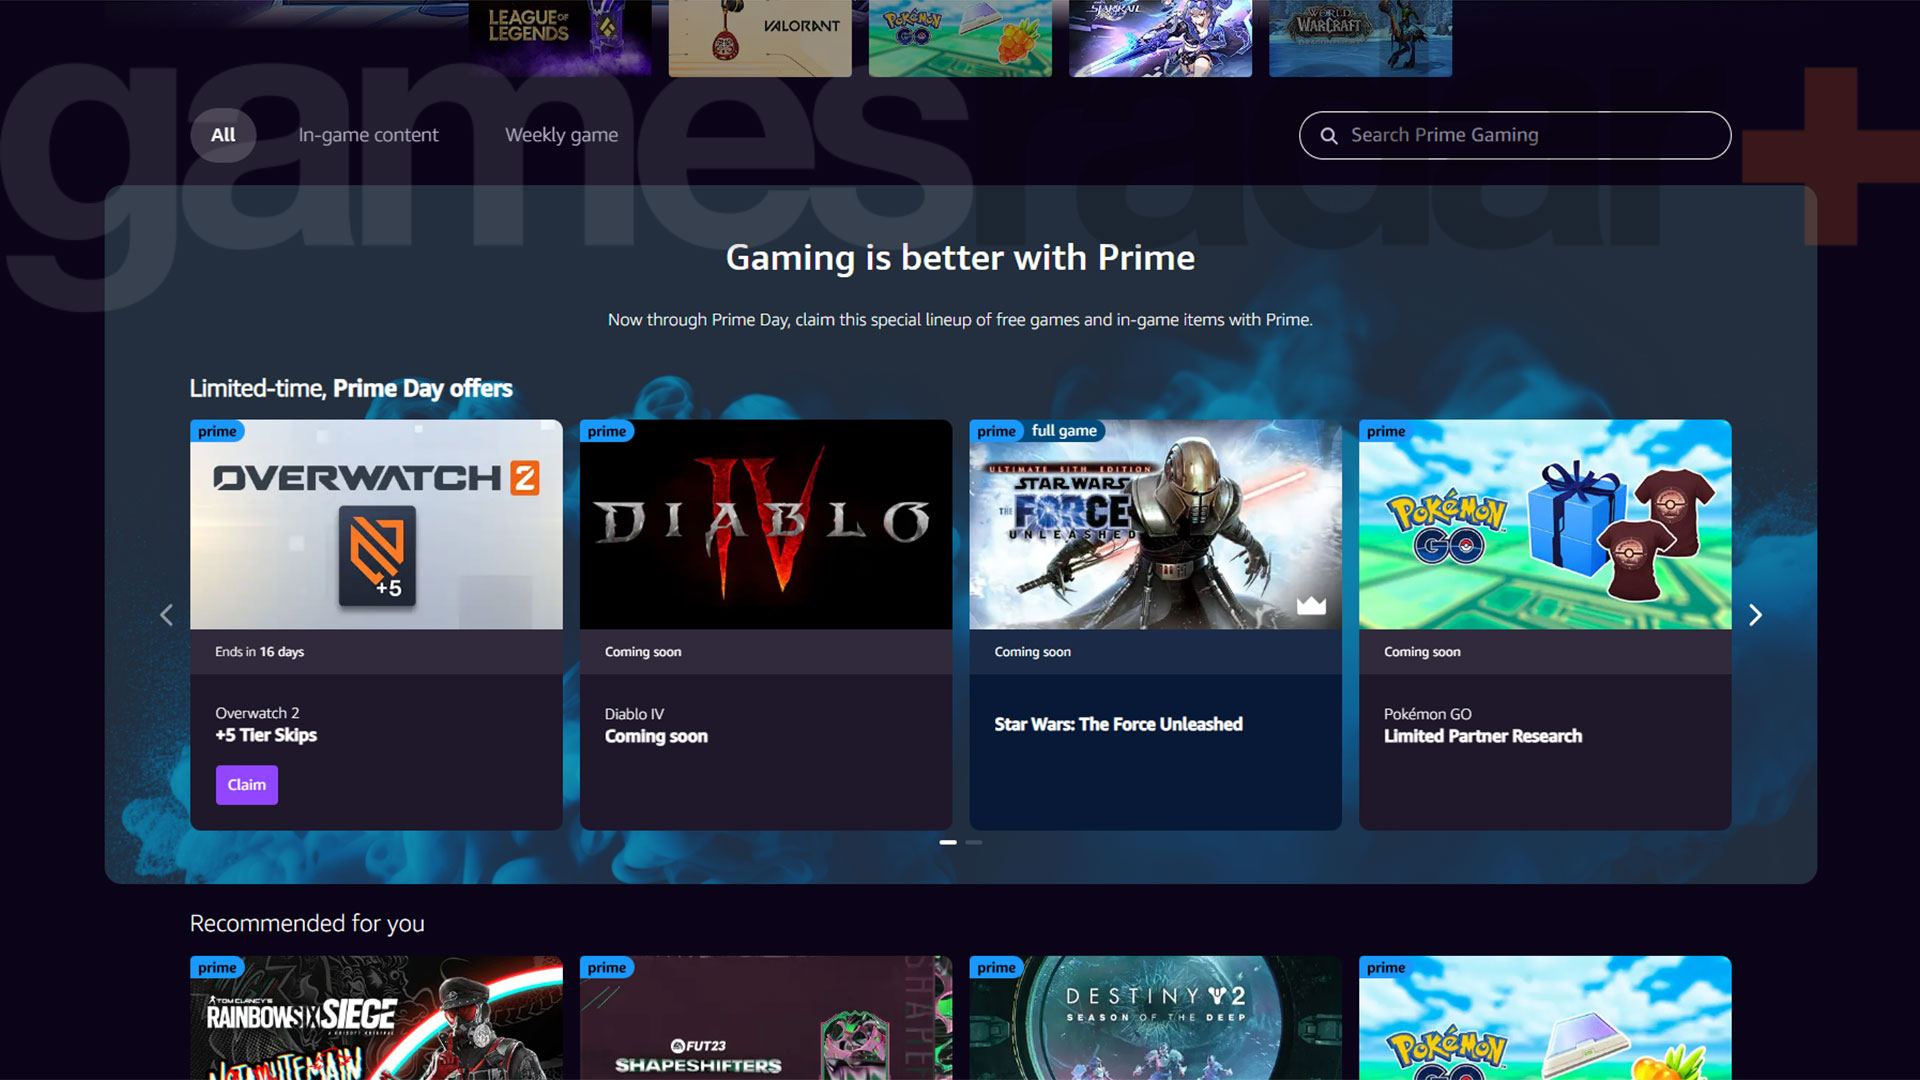 A Prime Gaming kezdőlapja, ahol a Diablo 4 jutalmak a Coming soon (hamarosan) címet viselik.